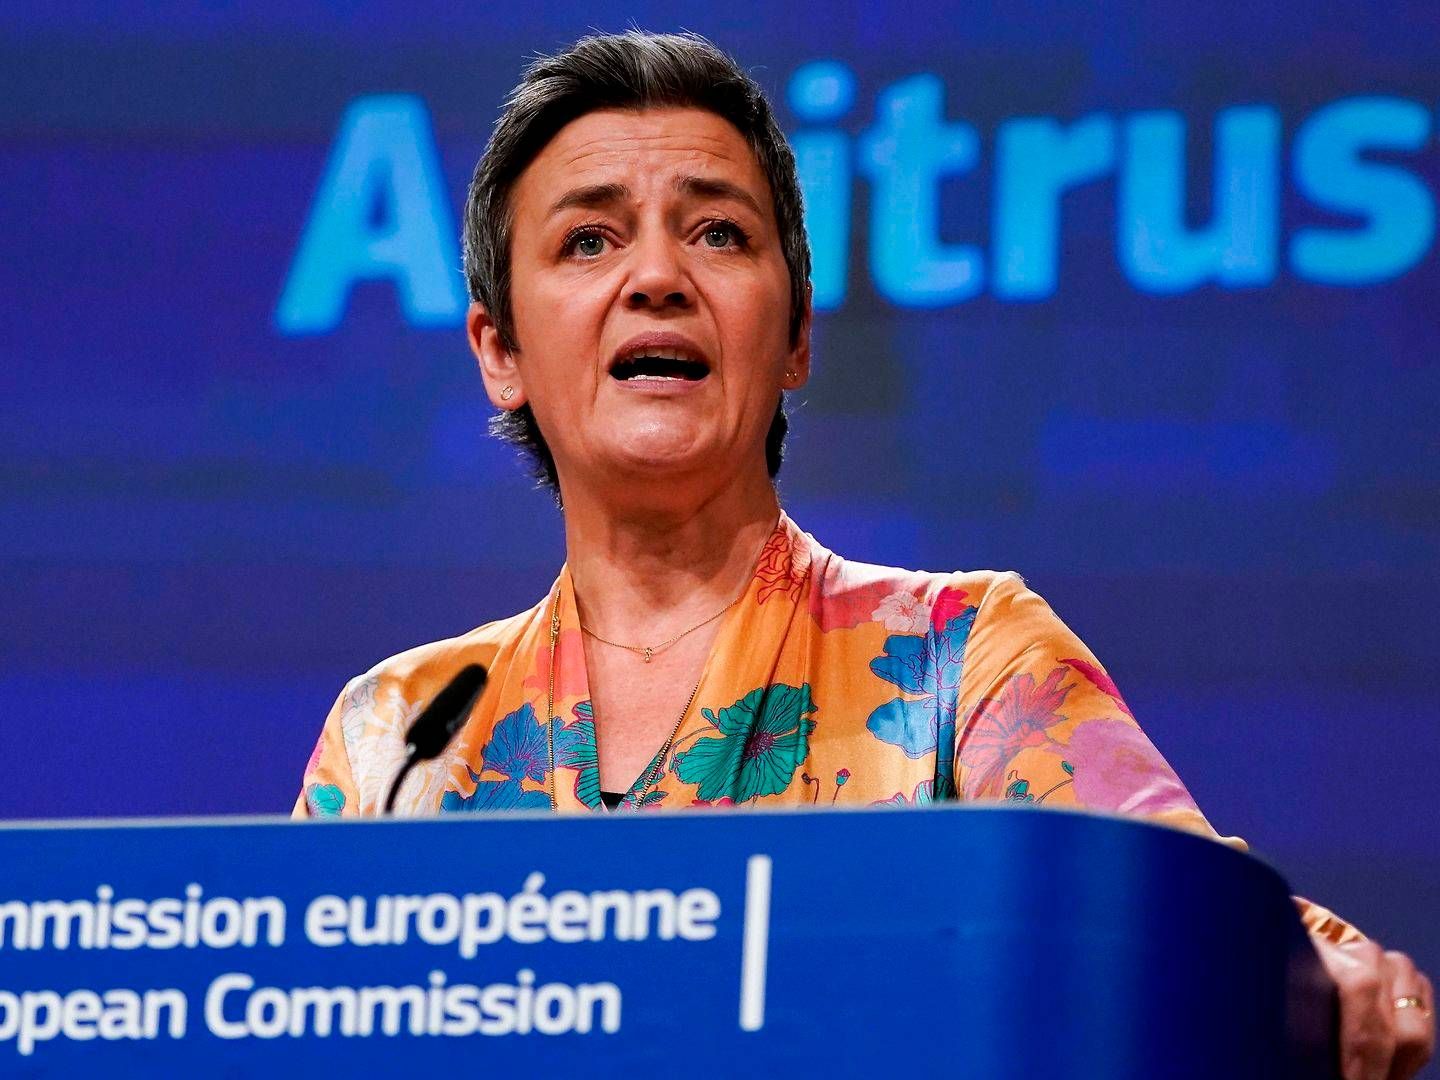 EU's konkurrencekommissær Margrethe Vestager skal snart tage endeligt stilling til containerindustriens særregel Block Exemption Rule. | Foto: Kenzo Tribouillard/AFP/Ritzau Scanpix